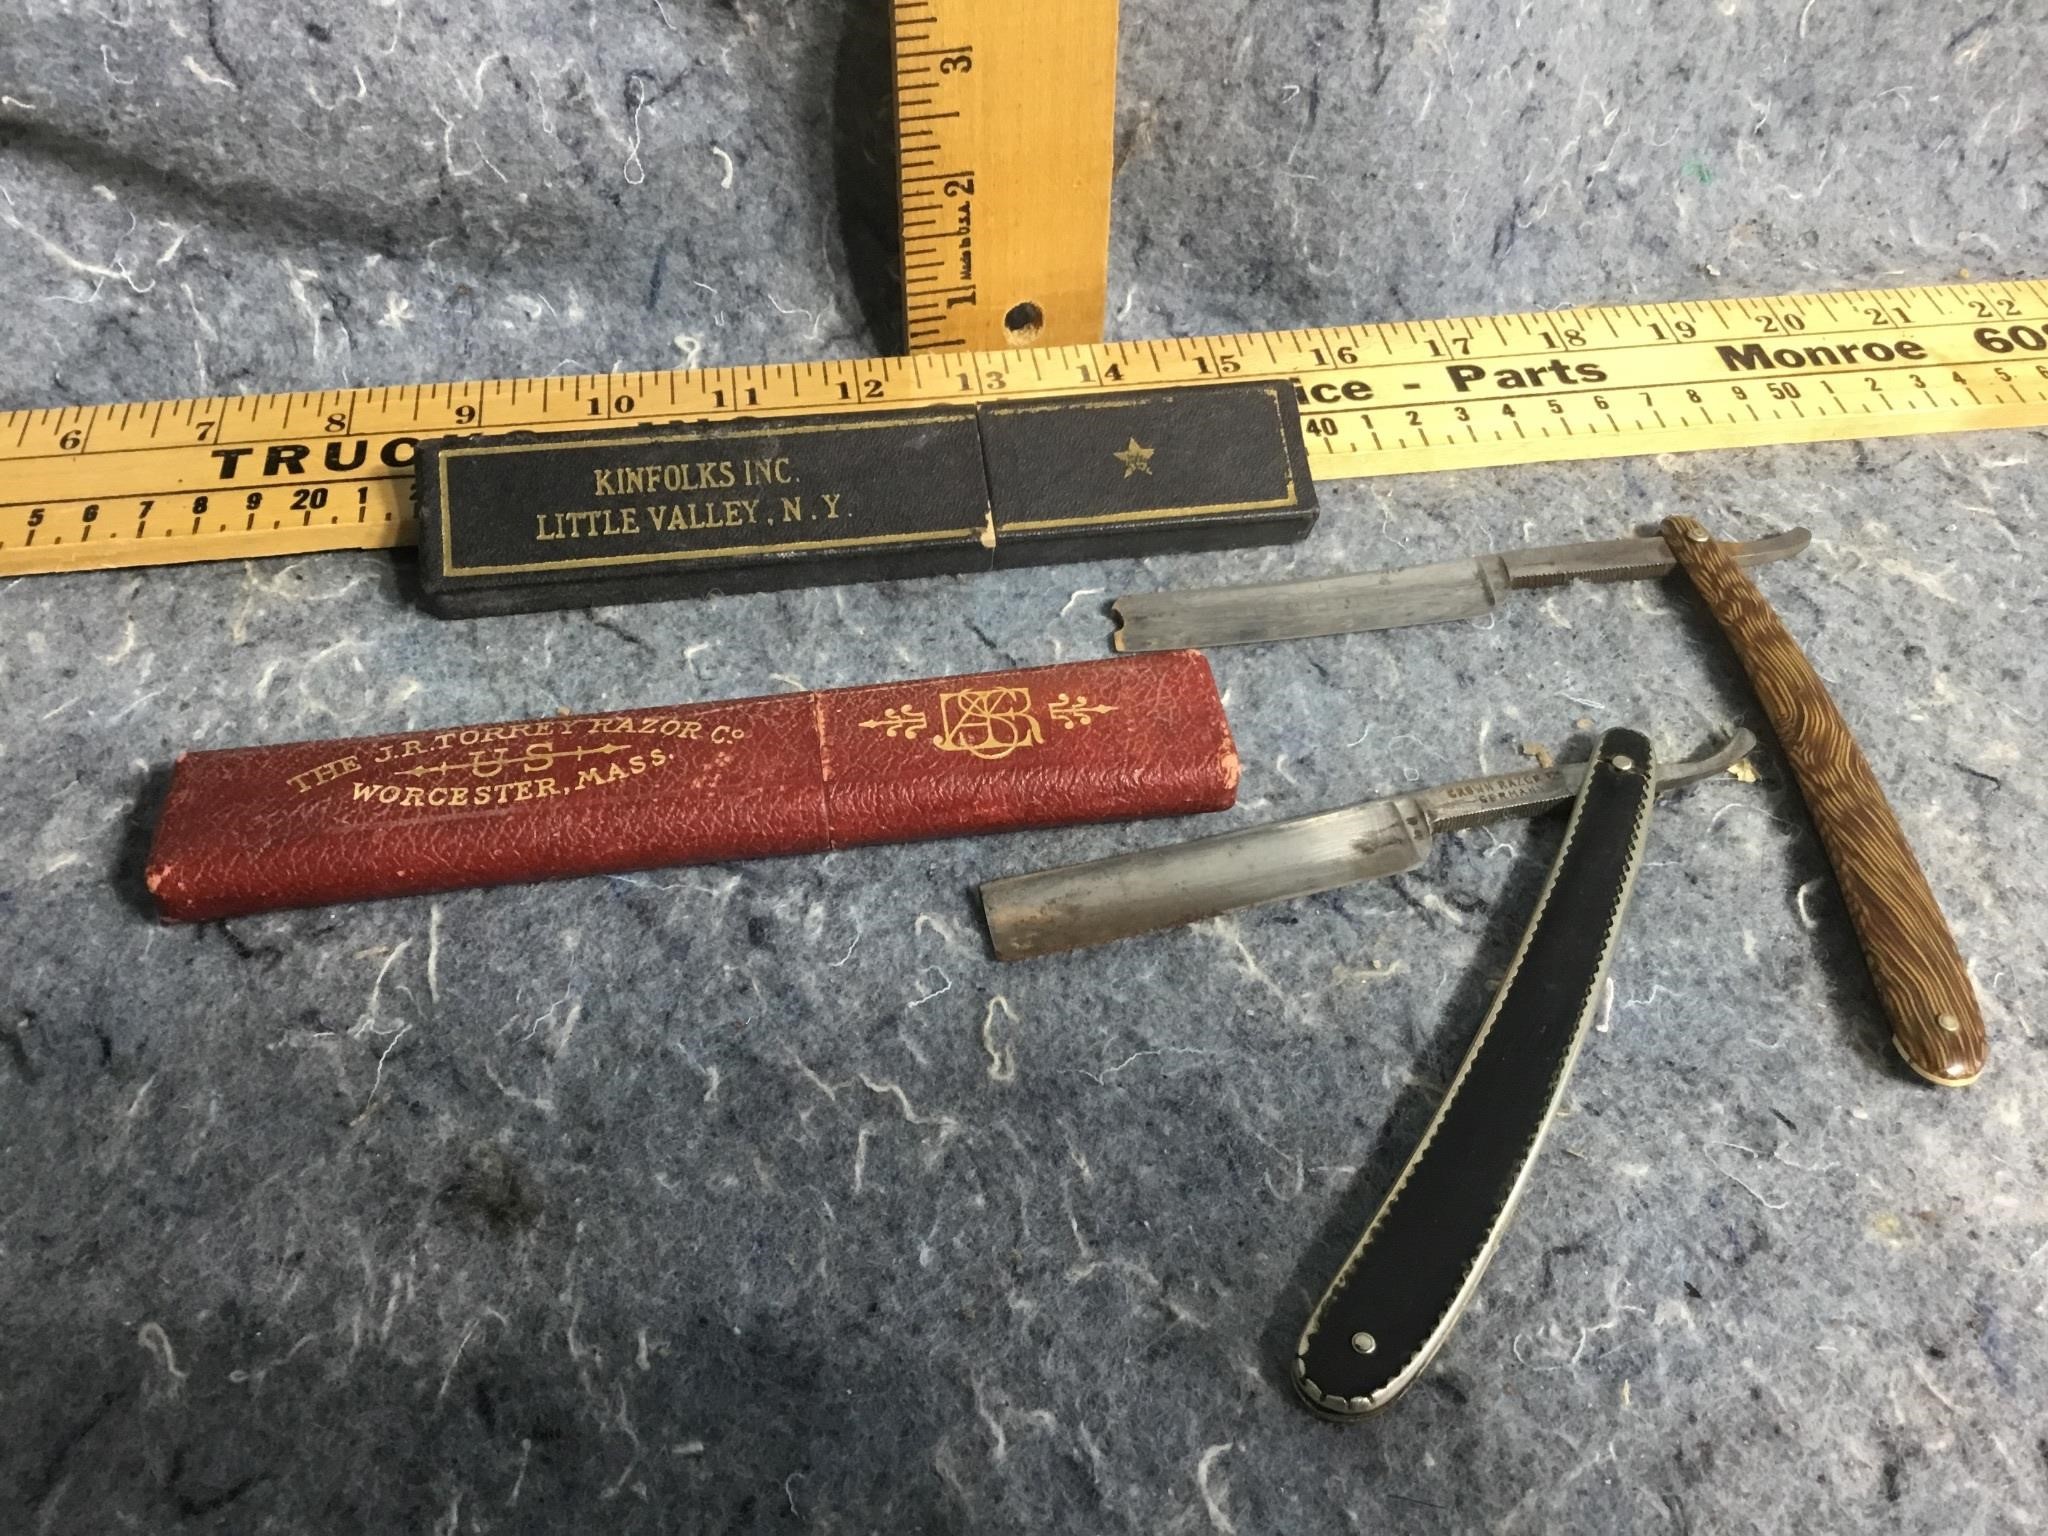 Pair of straight blade razors